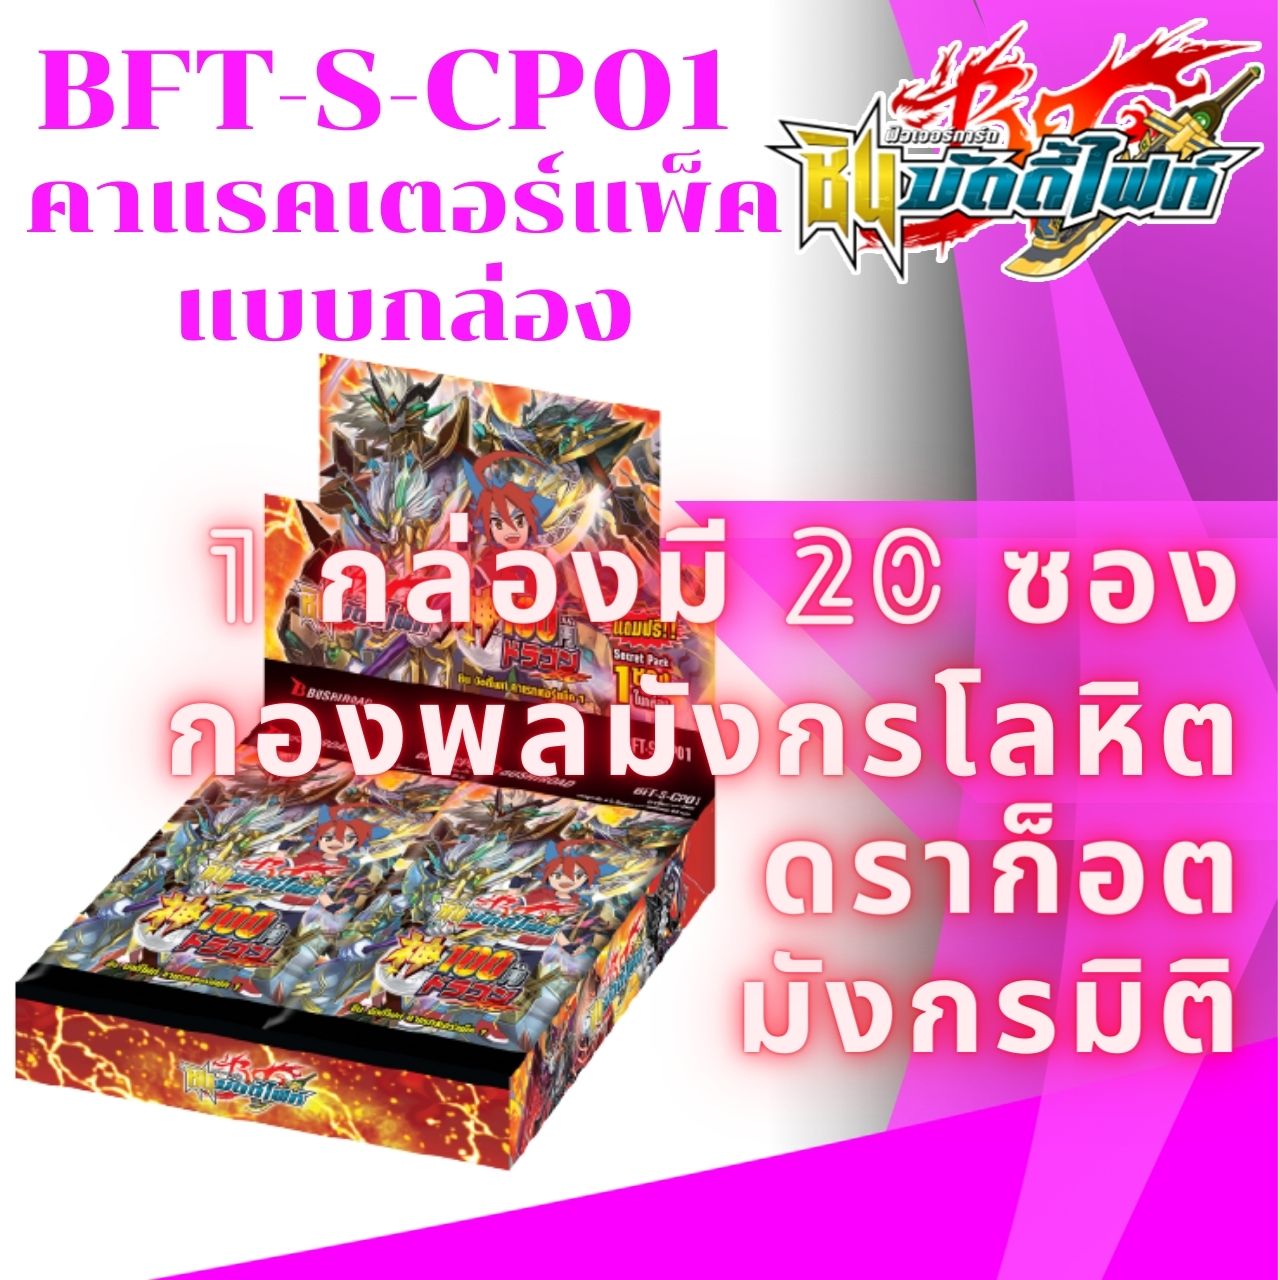 พร้อมส่ง 28 ก.ค. 64 BFT-S-CP01 คาแรกเตอร์แพ็ค (1กล่อง 20 ซอง) ภาษาไทย การ์ดบัดดี้ไฟท์ Buddyfight ภาค ชิน Shin การ์ดเกม